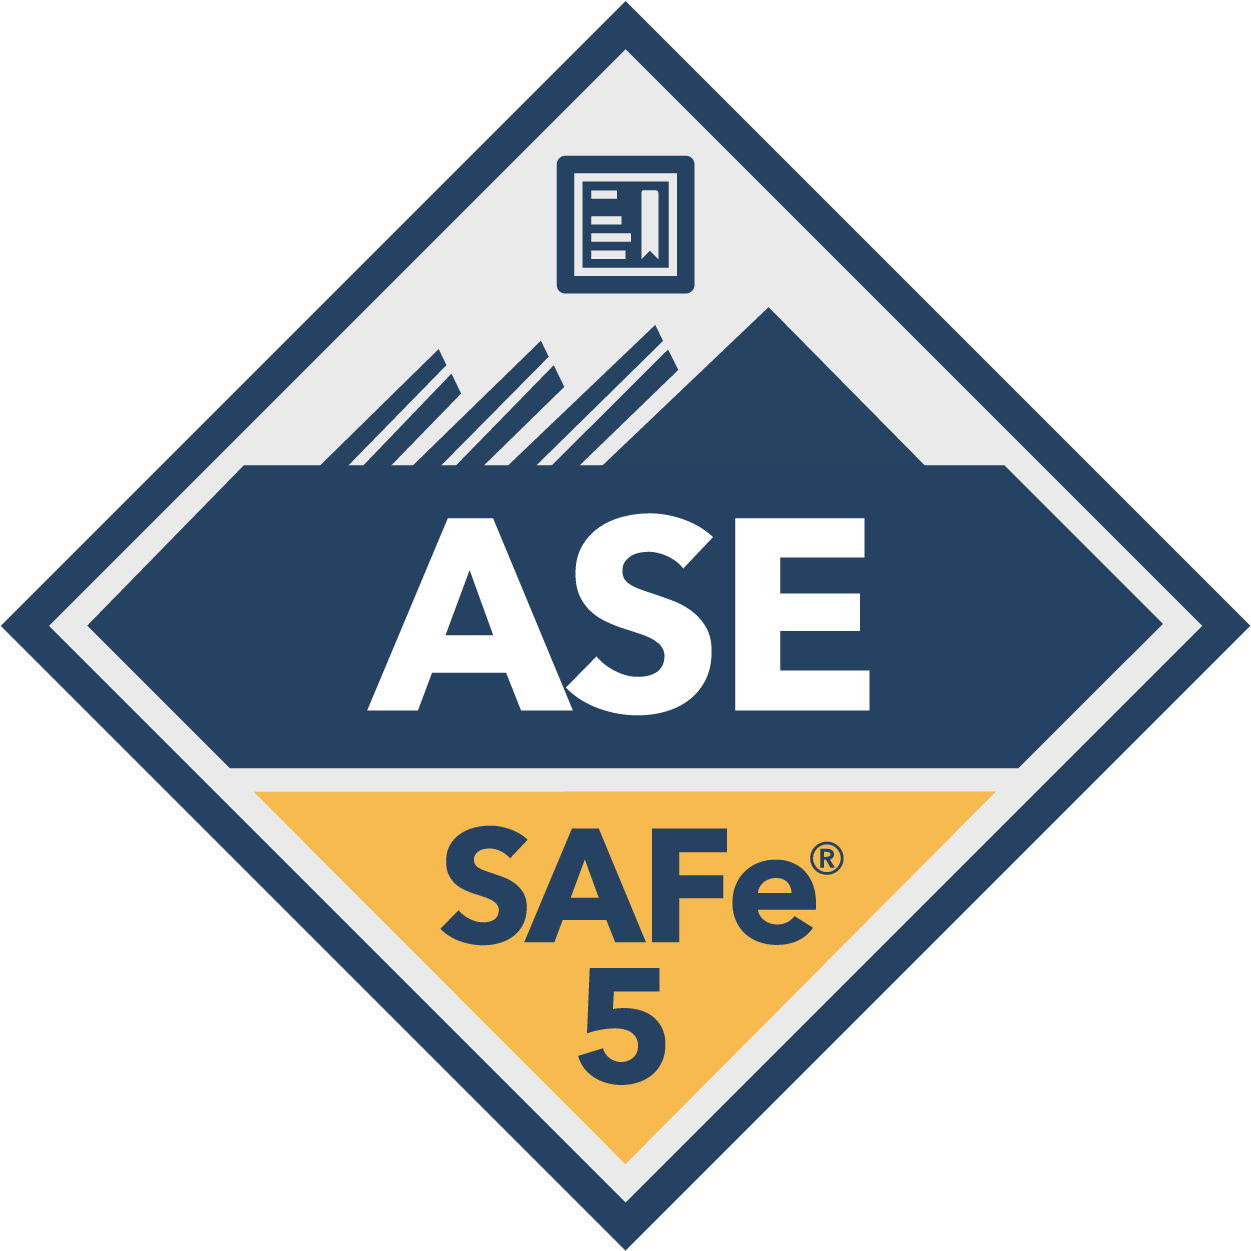 Как получить учебное пособие A3 ASE и практический тест